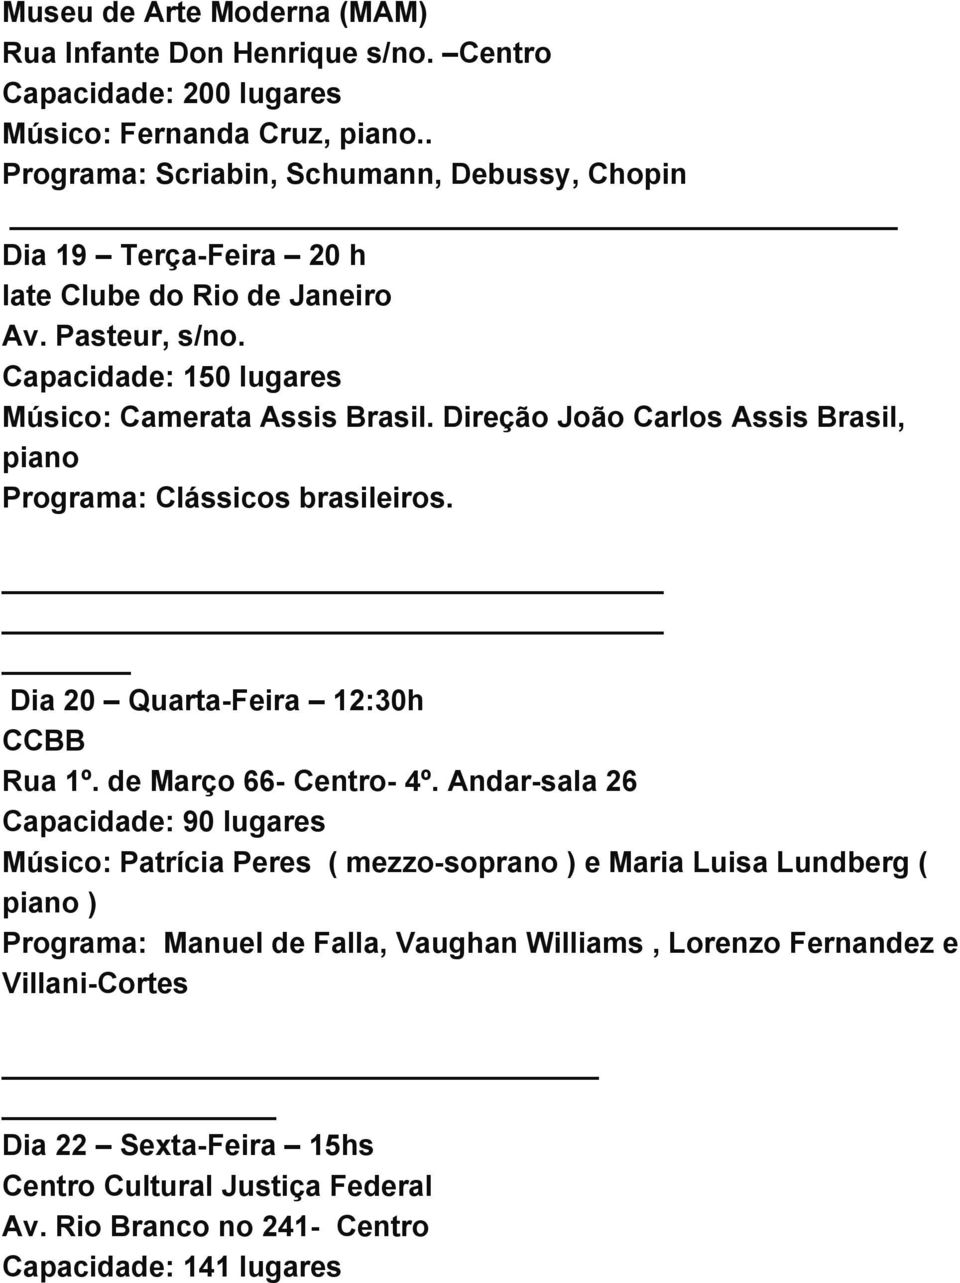 Direção João Carlos Assis Brasil, piano Programa: Clássicos brasileiros. Dia 20 Quarta Feira 12:30h CCBB Rua 1º. de Março 66 Centro 4º.